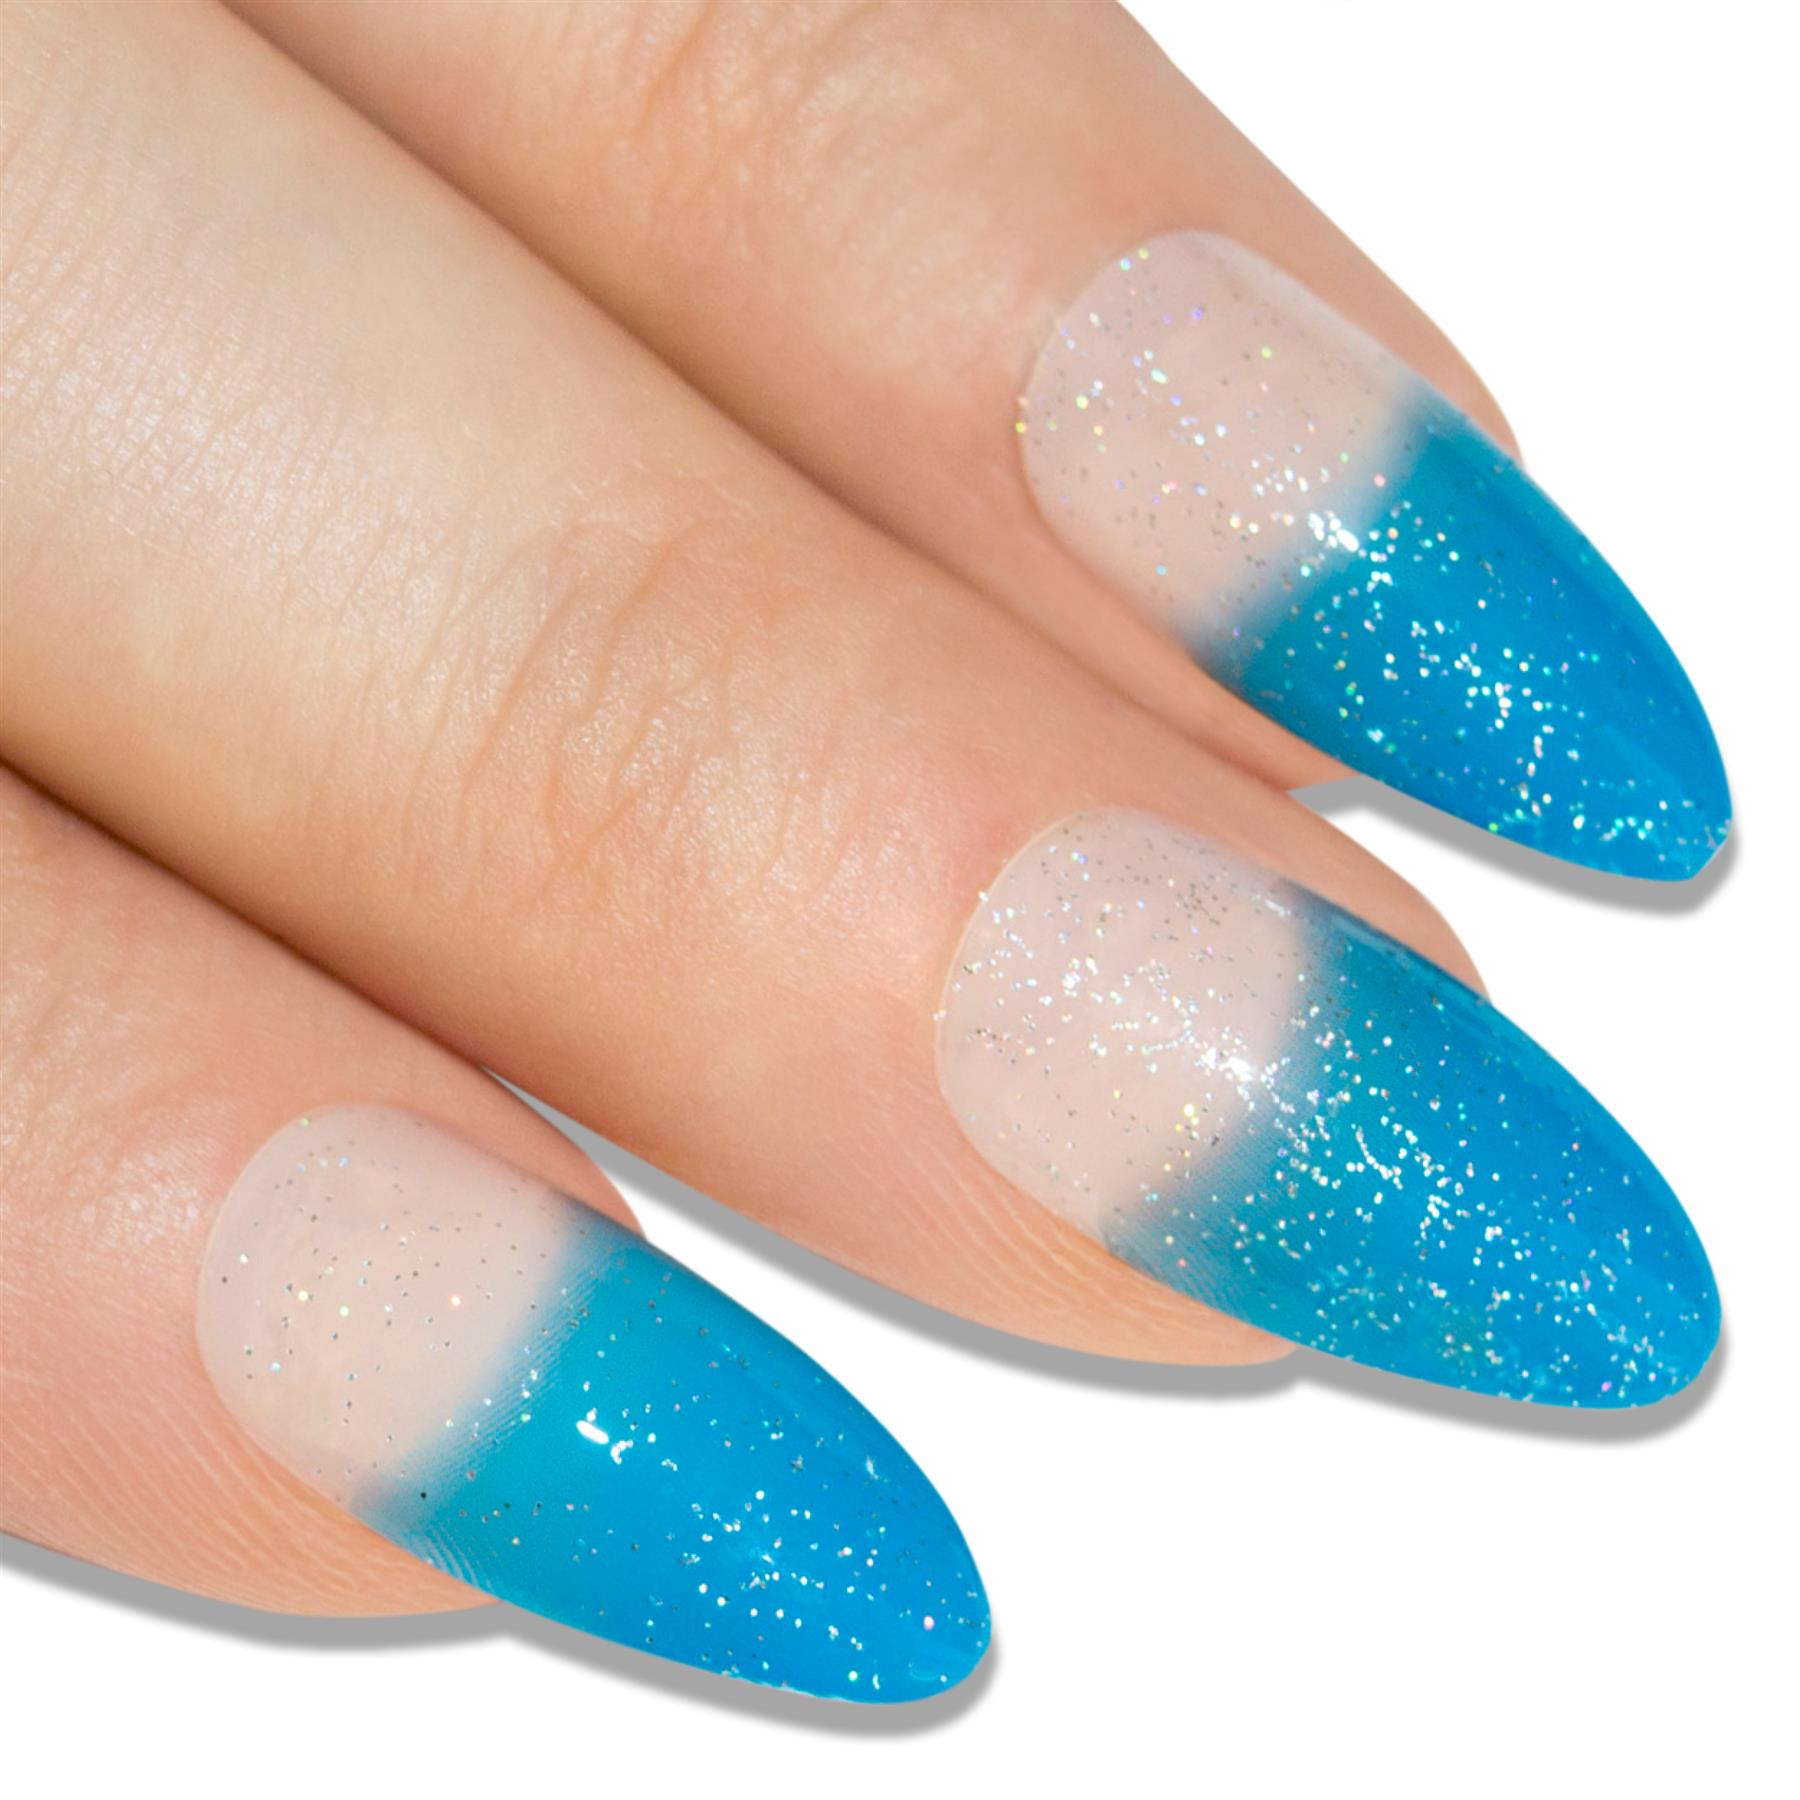 False Nails by Bling Art Blue Gel Glitter 24 Almond Stiletto Long Fake Tips Glue